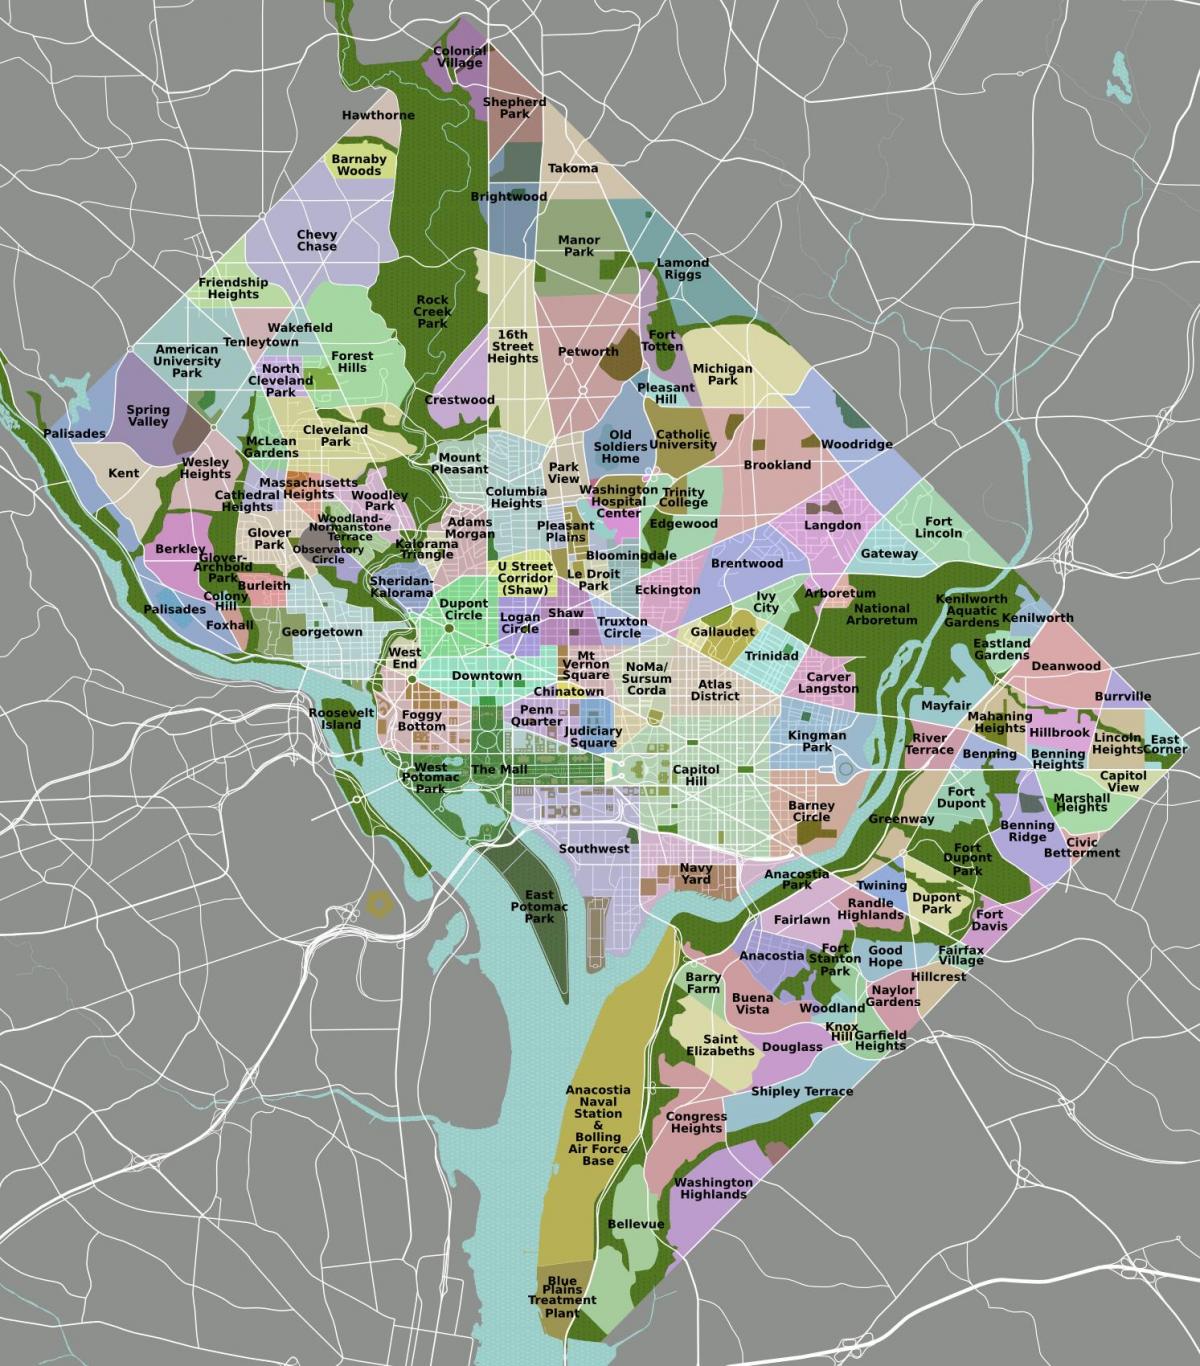 Mapa do distrito de Washington DC